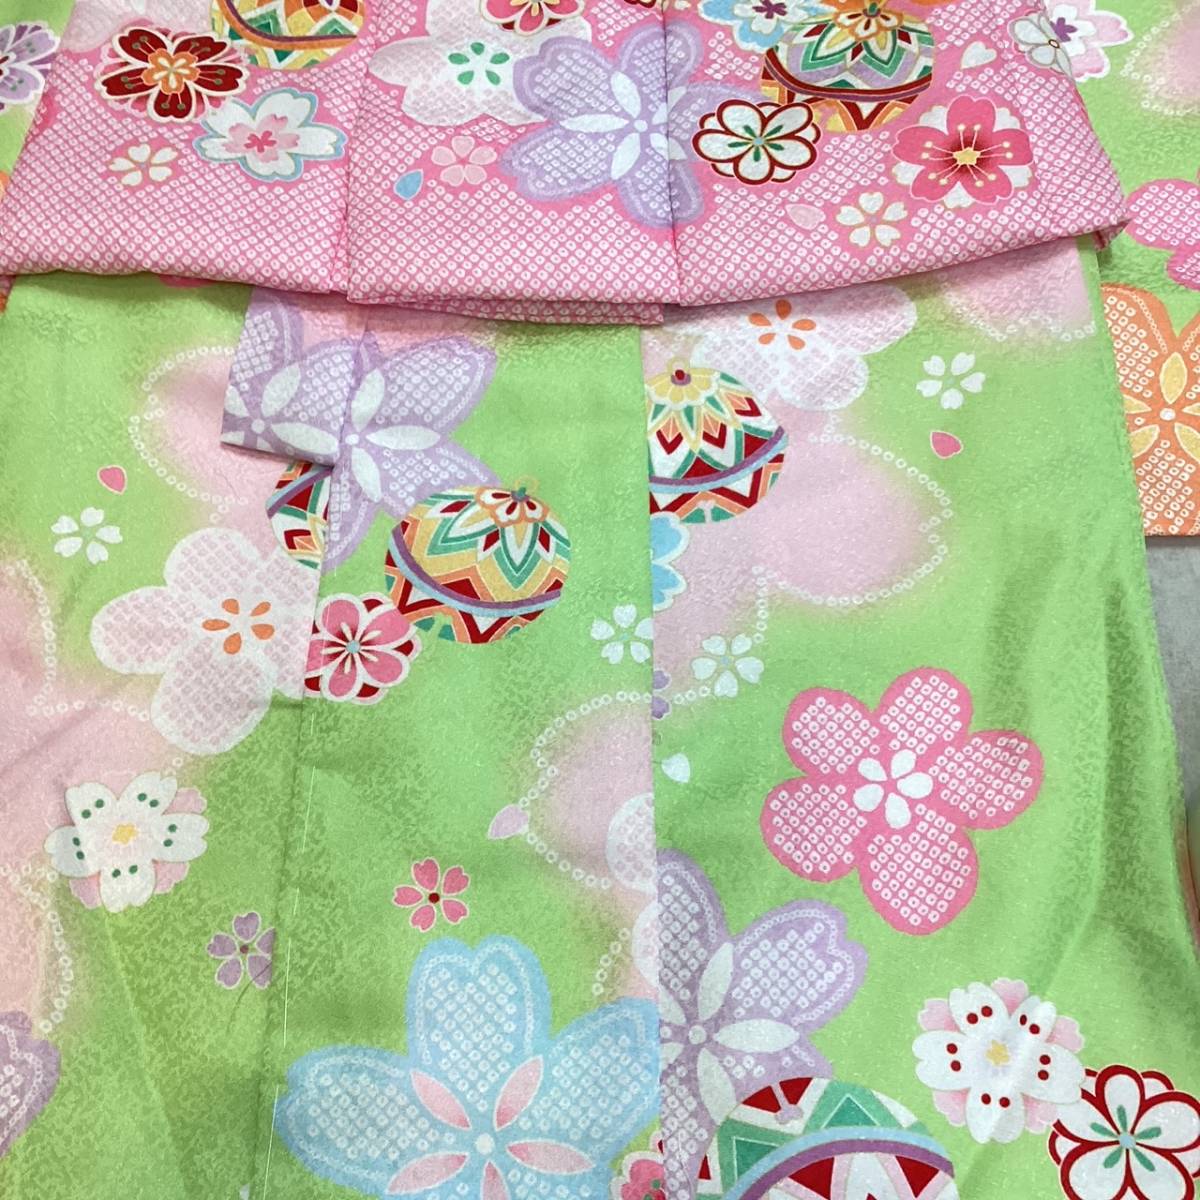  "Семь, пять, три" кимоно 3 лет mi519a. ткань * кимоно 7 позиций комплект .. рисунок цветочный принт новый товар включая доставку 